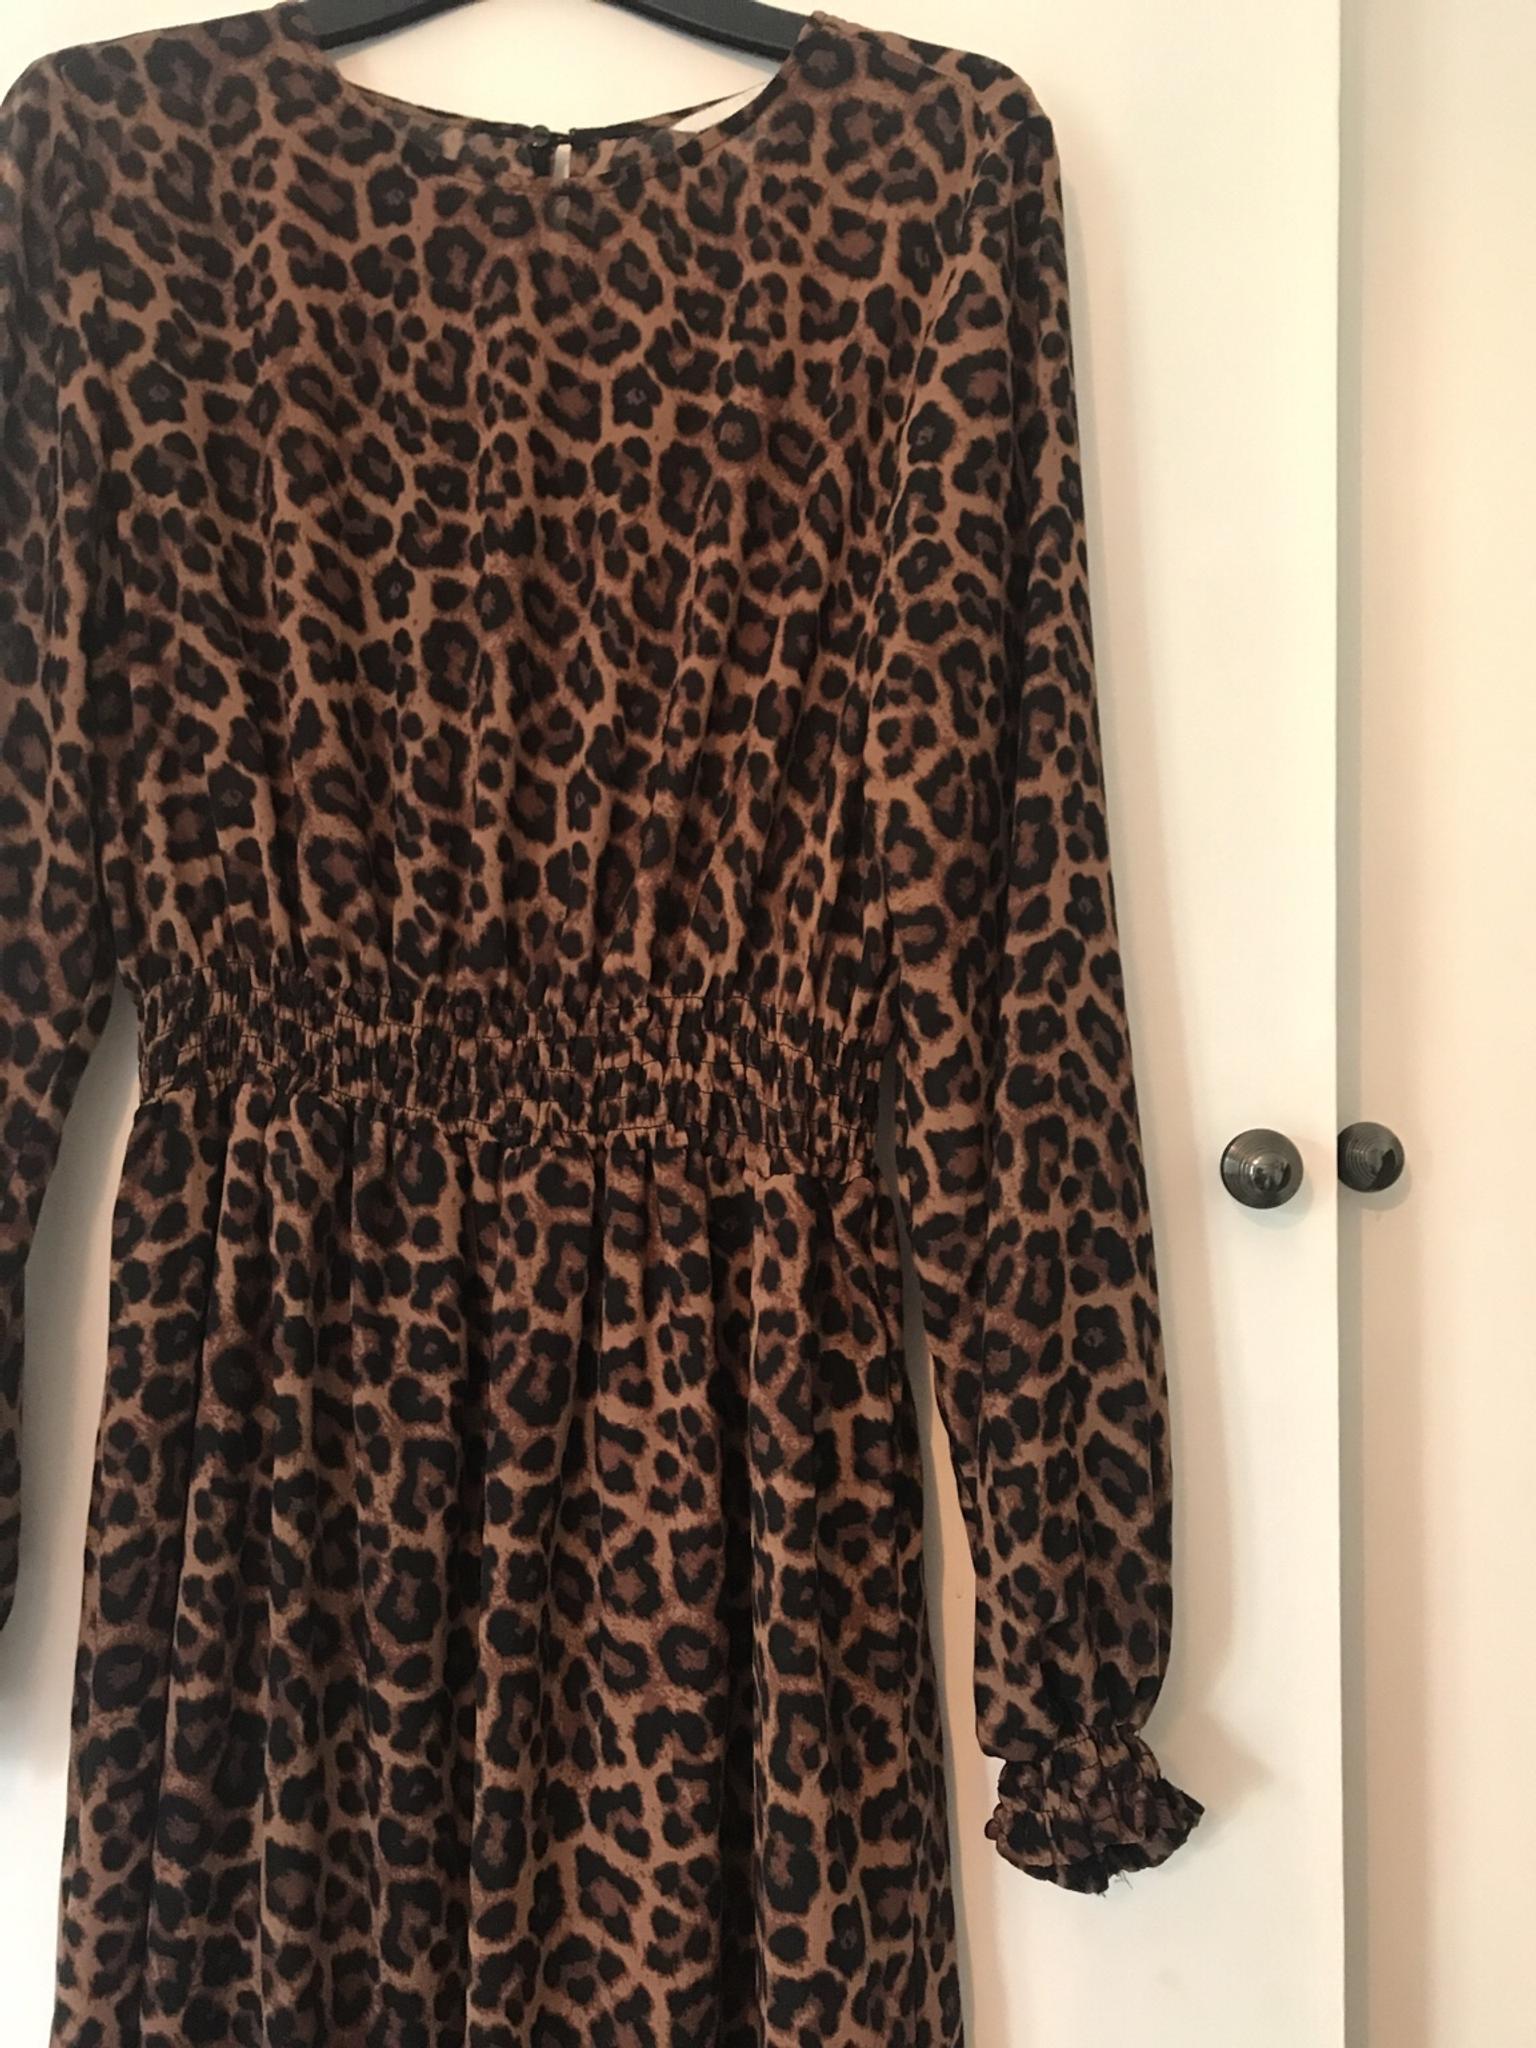 leopard print h&m dress